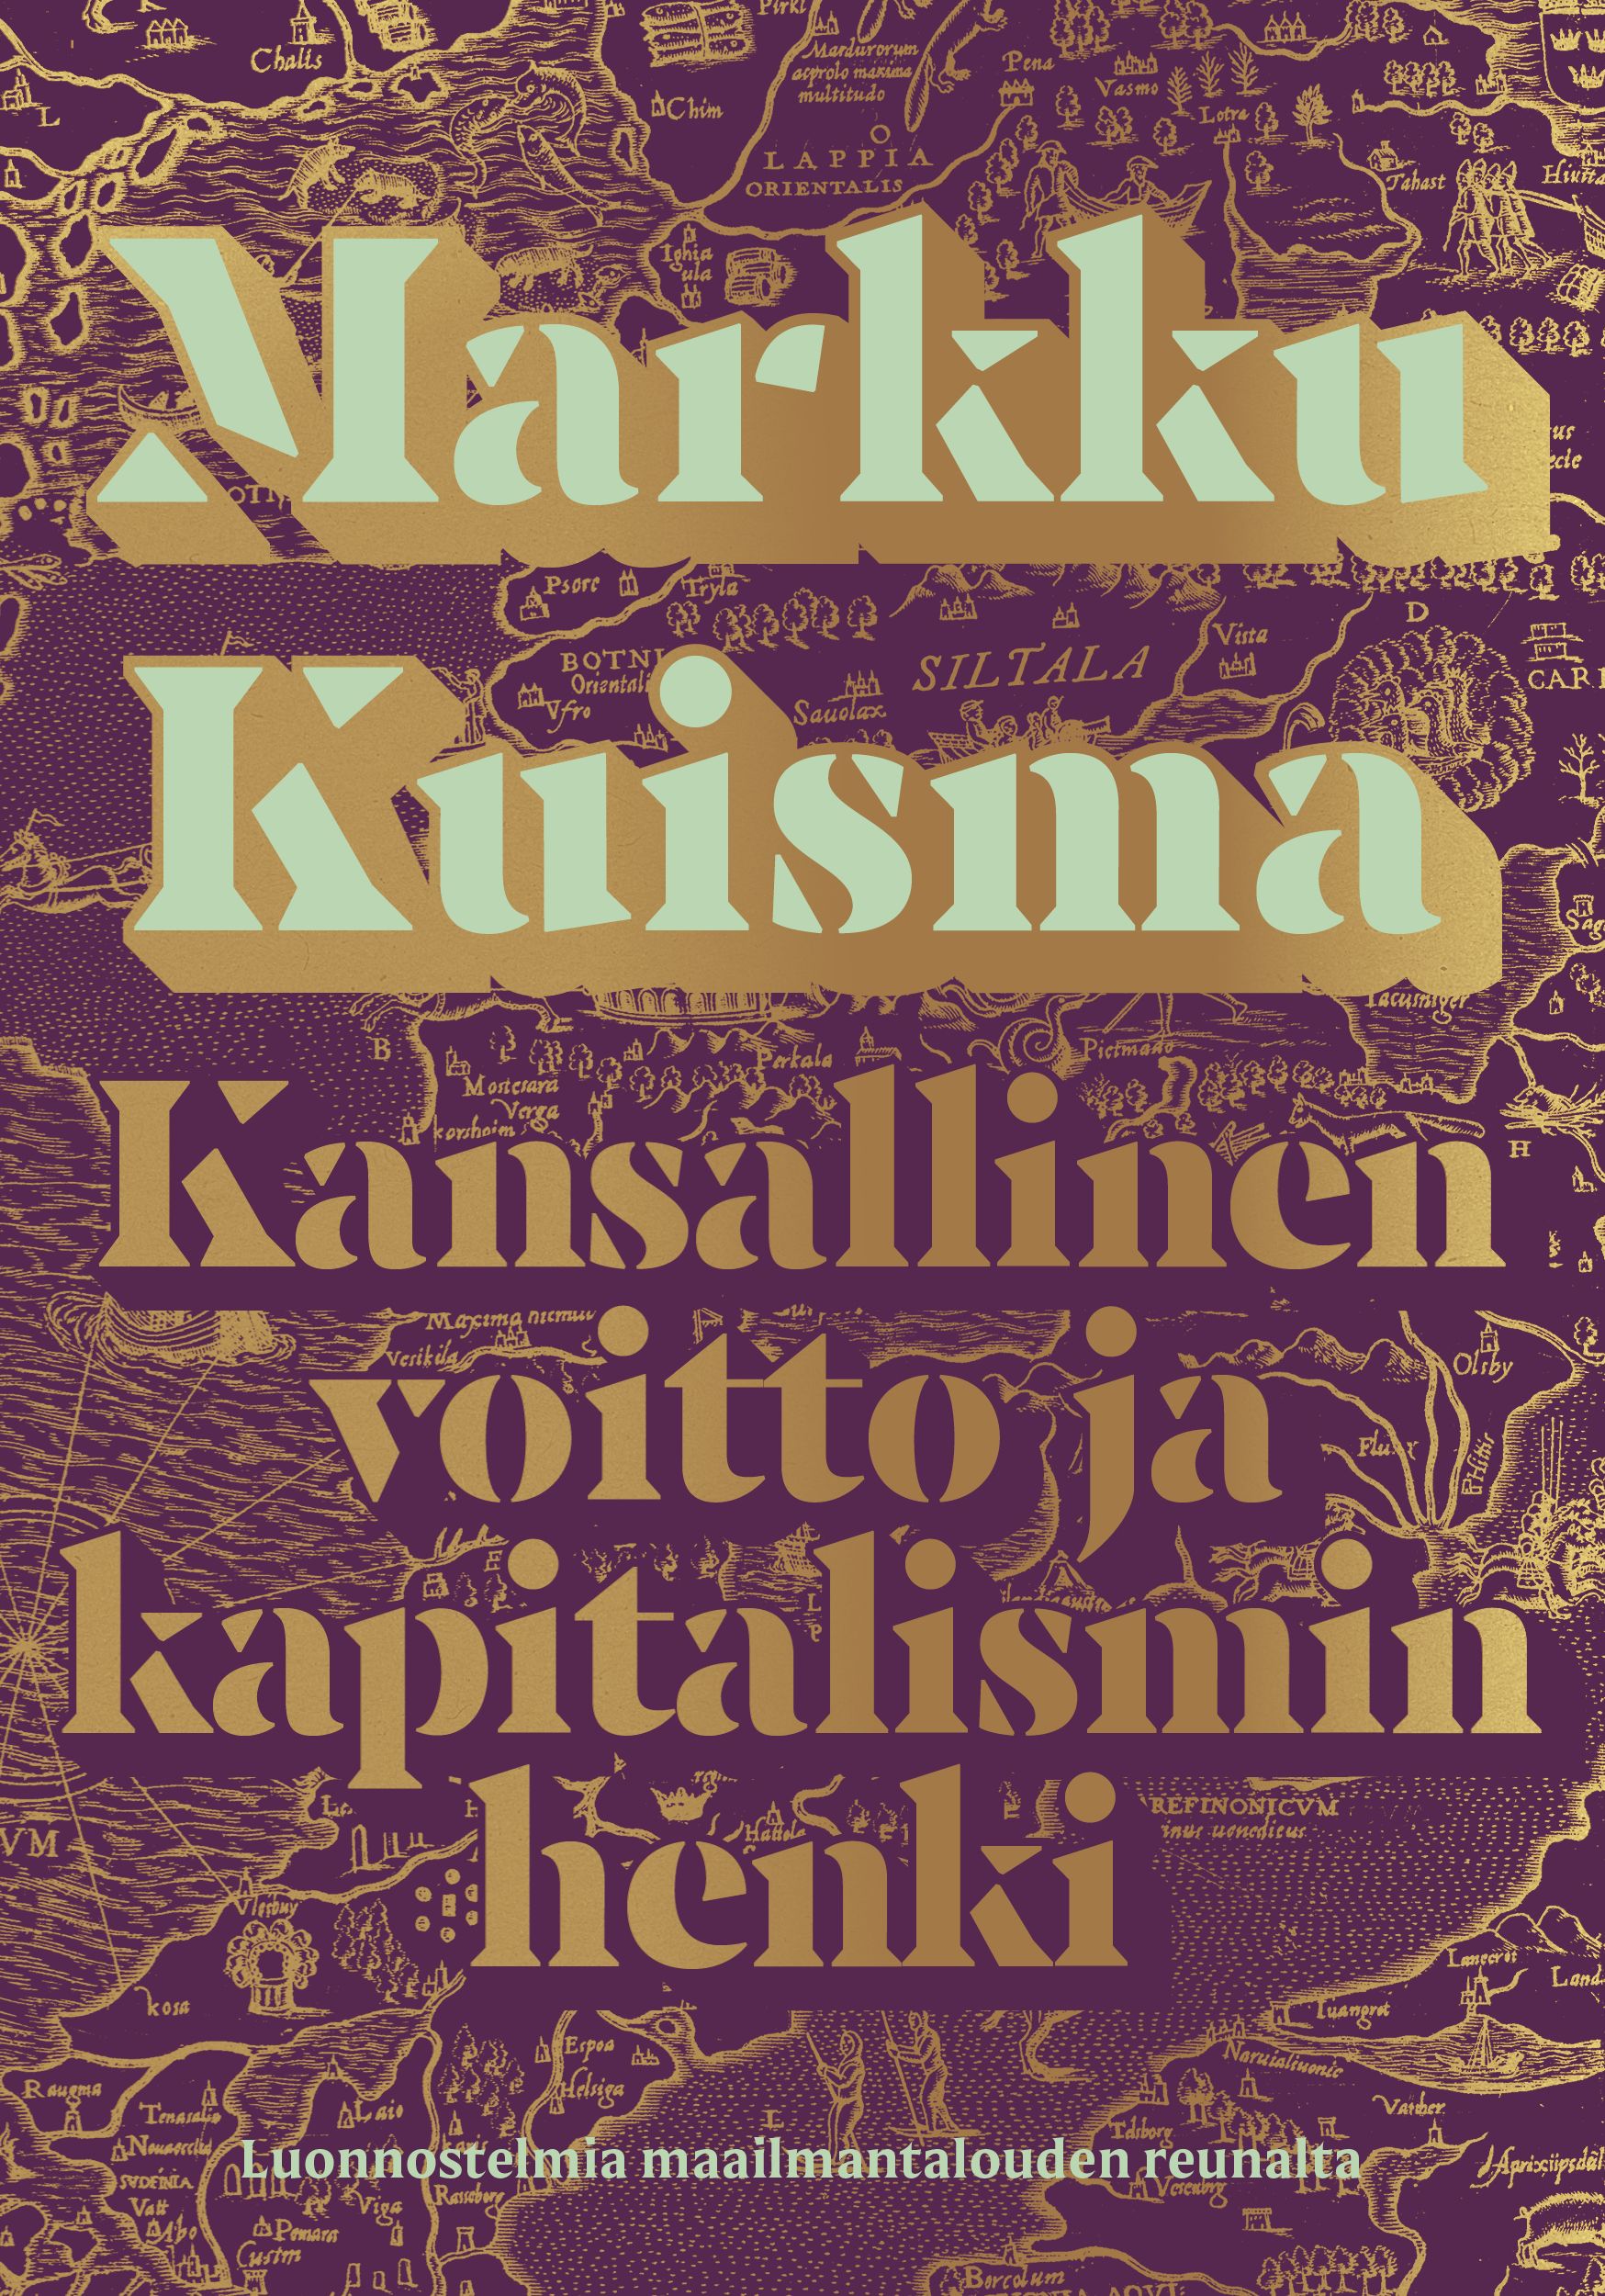 Markku Kuisma : Kansallinen voitto ja kapitalismin henki